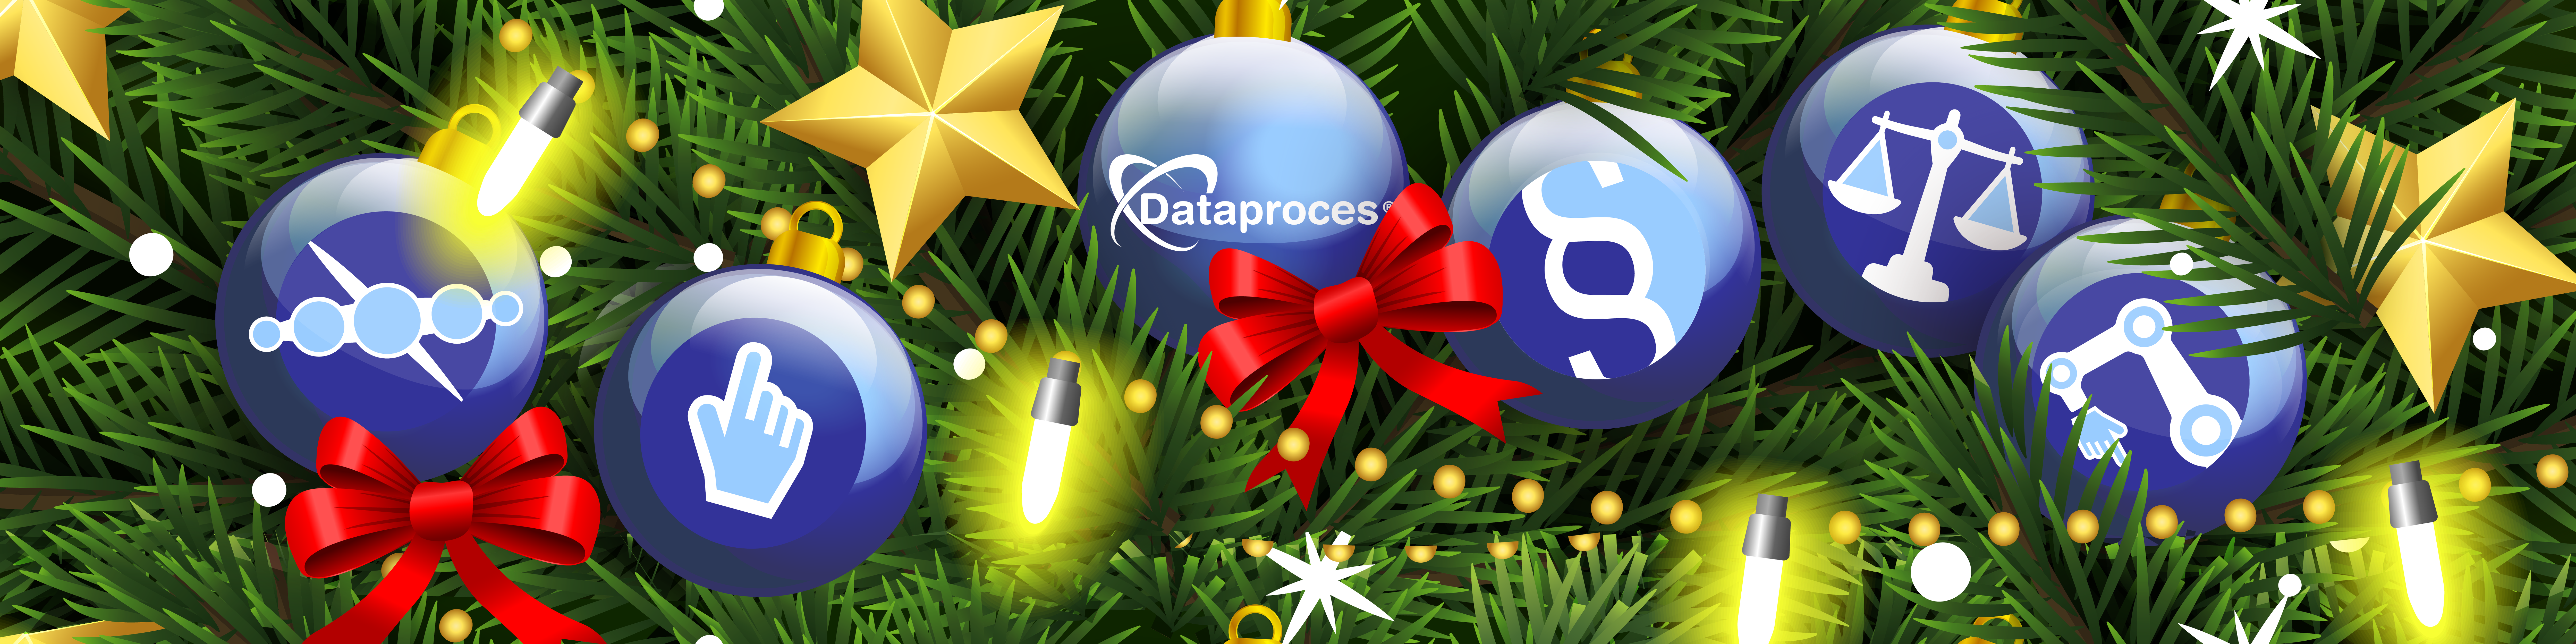 Dataproces ønsker glædelig jul og godt nytår